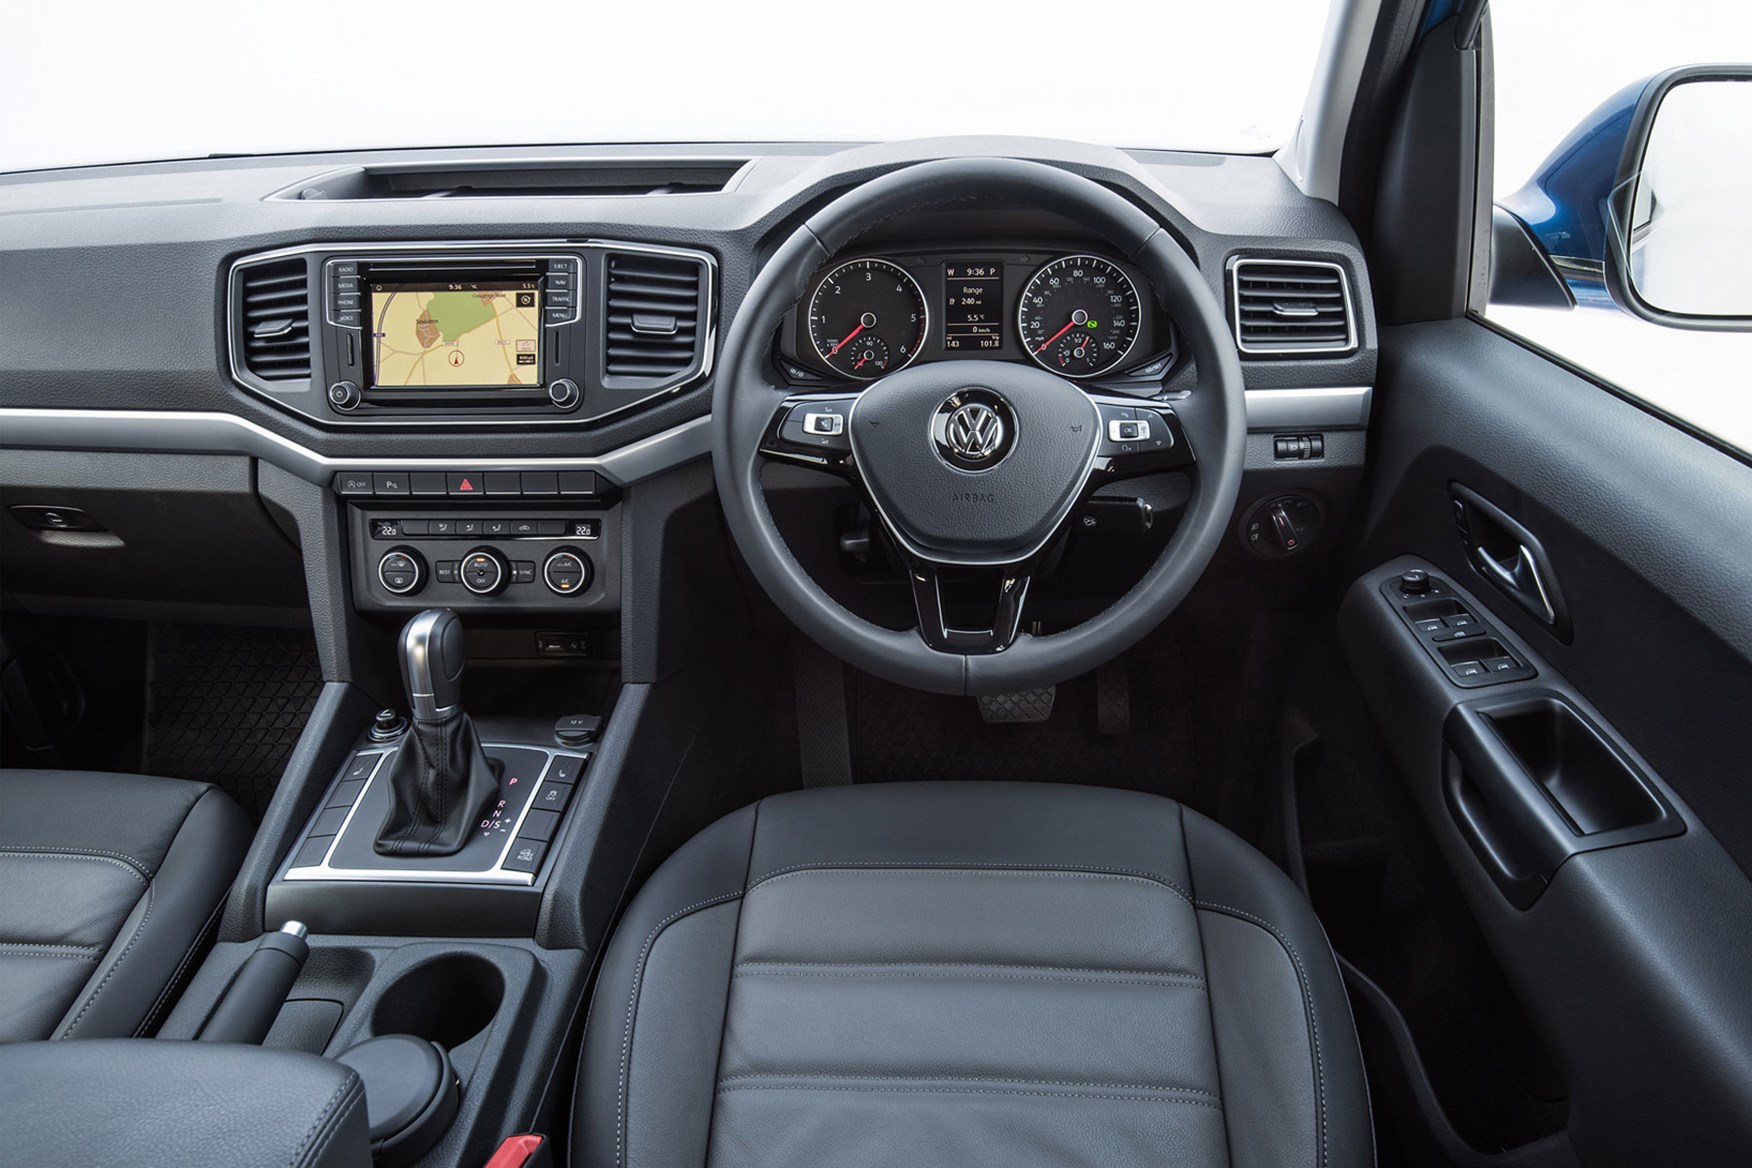 VW Amarok V6 interior